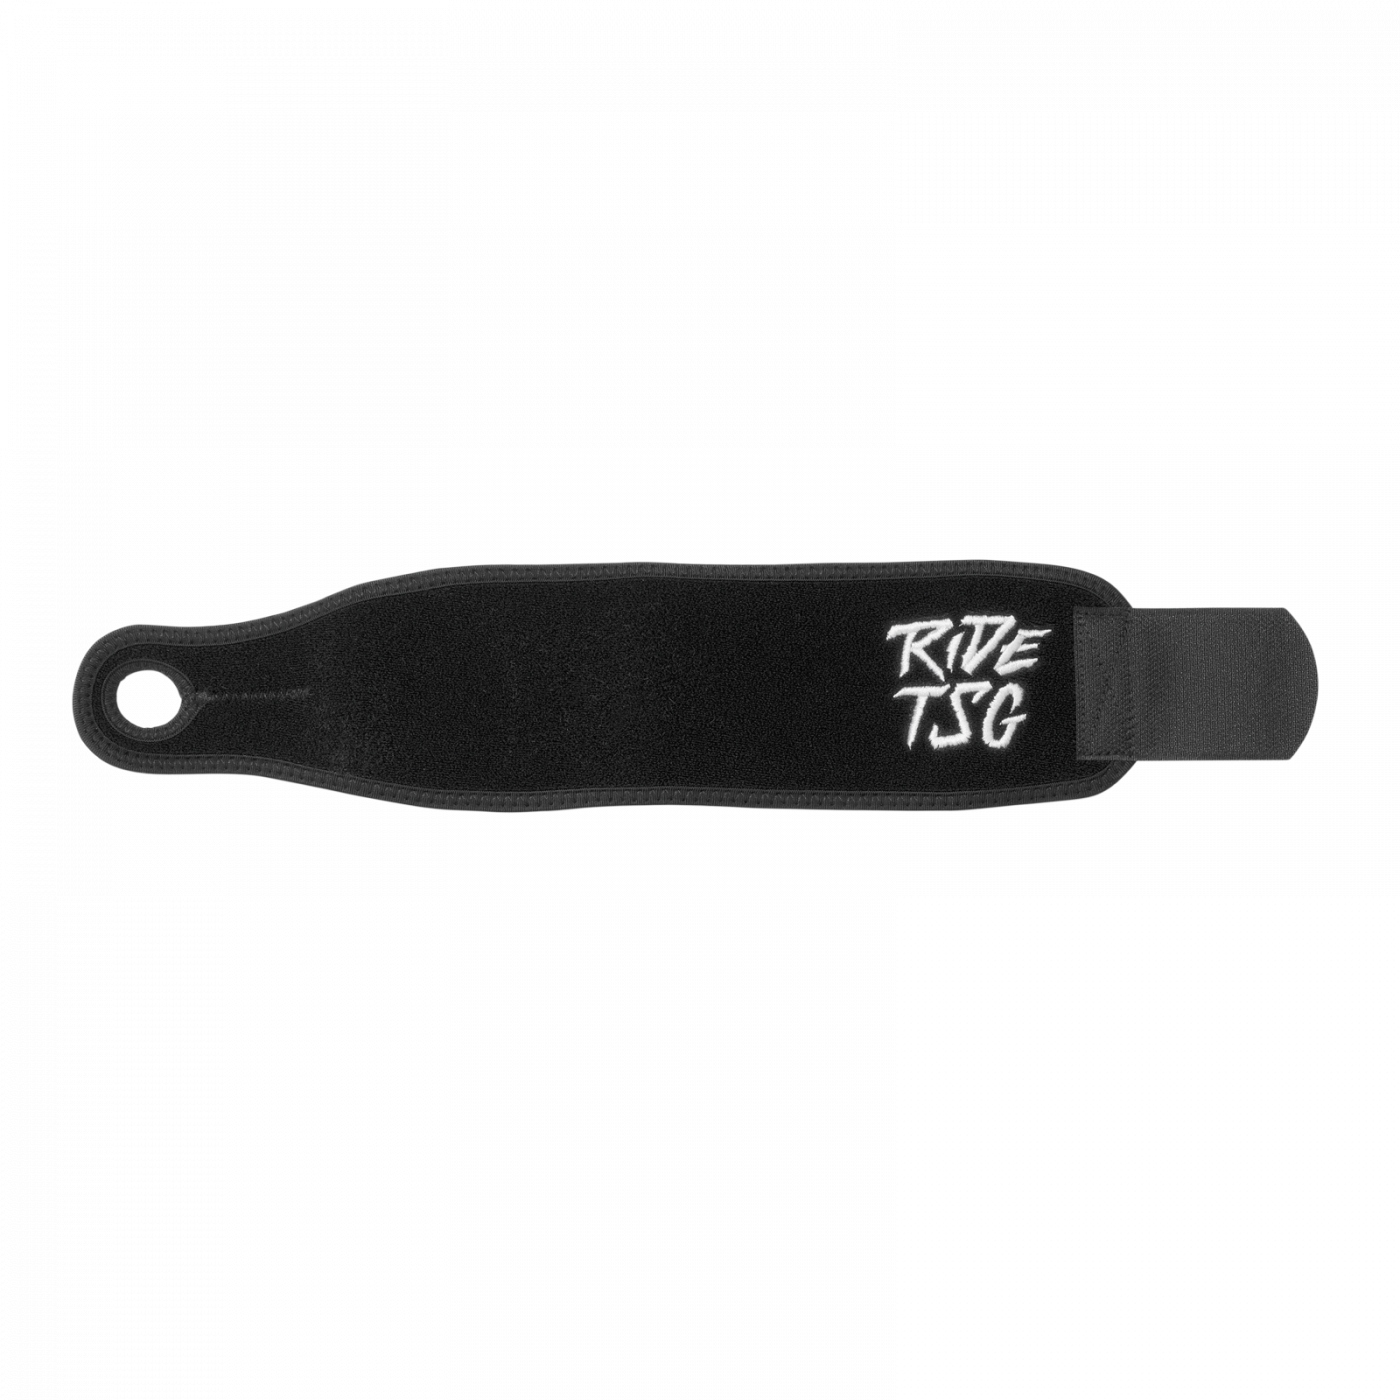 Produktbild von TSG Wrist Brace Handgelenkstütze - schwarz